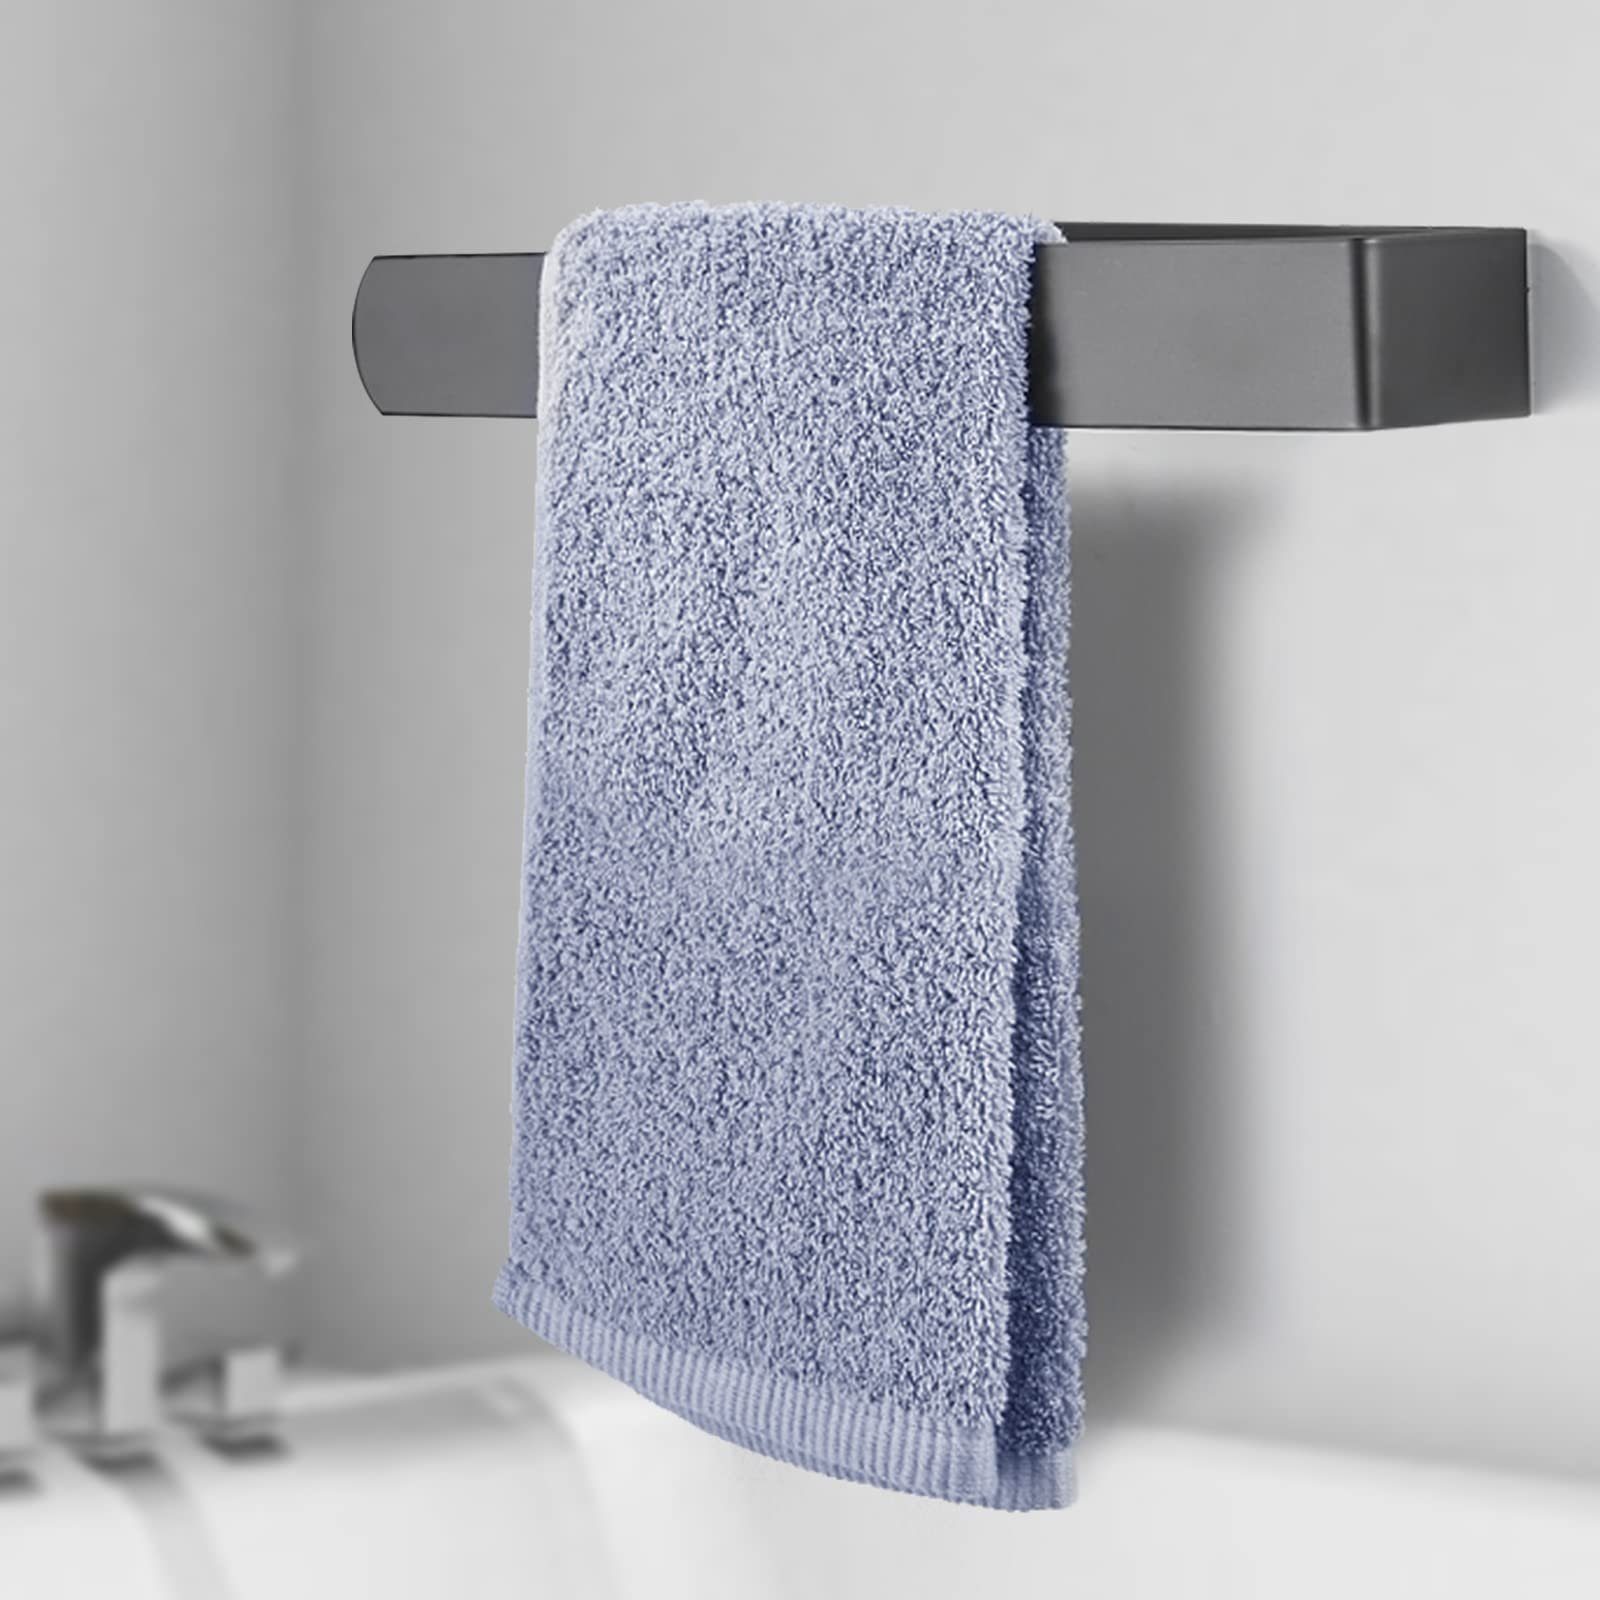 Handtuchstange Schiene Badezimmer ohne Handtuch Jormftte Bohren